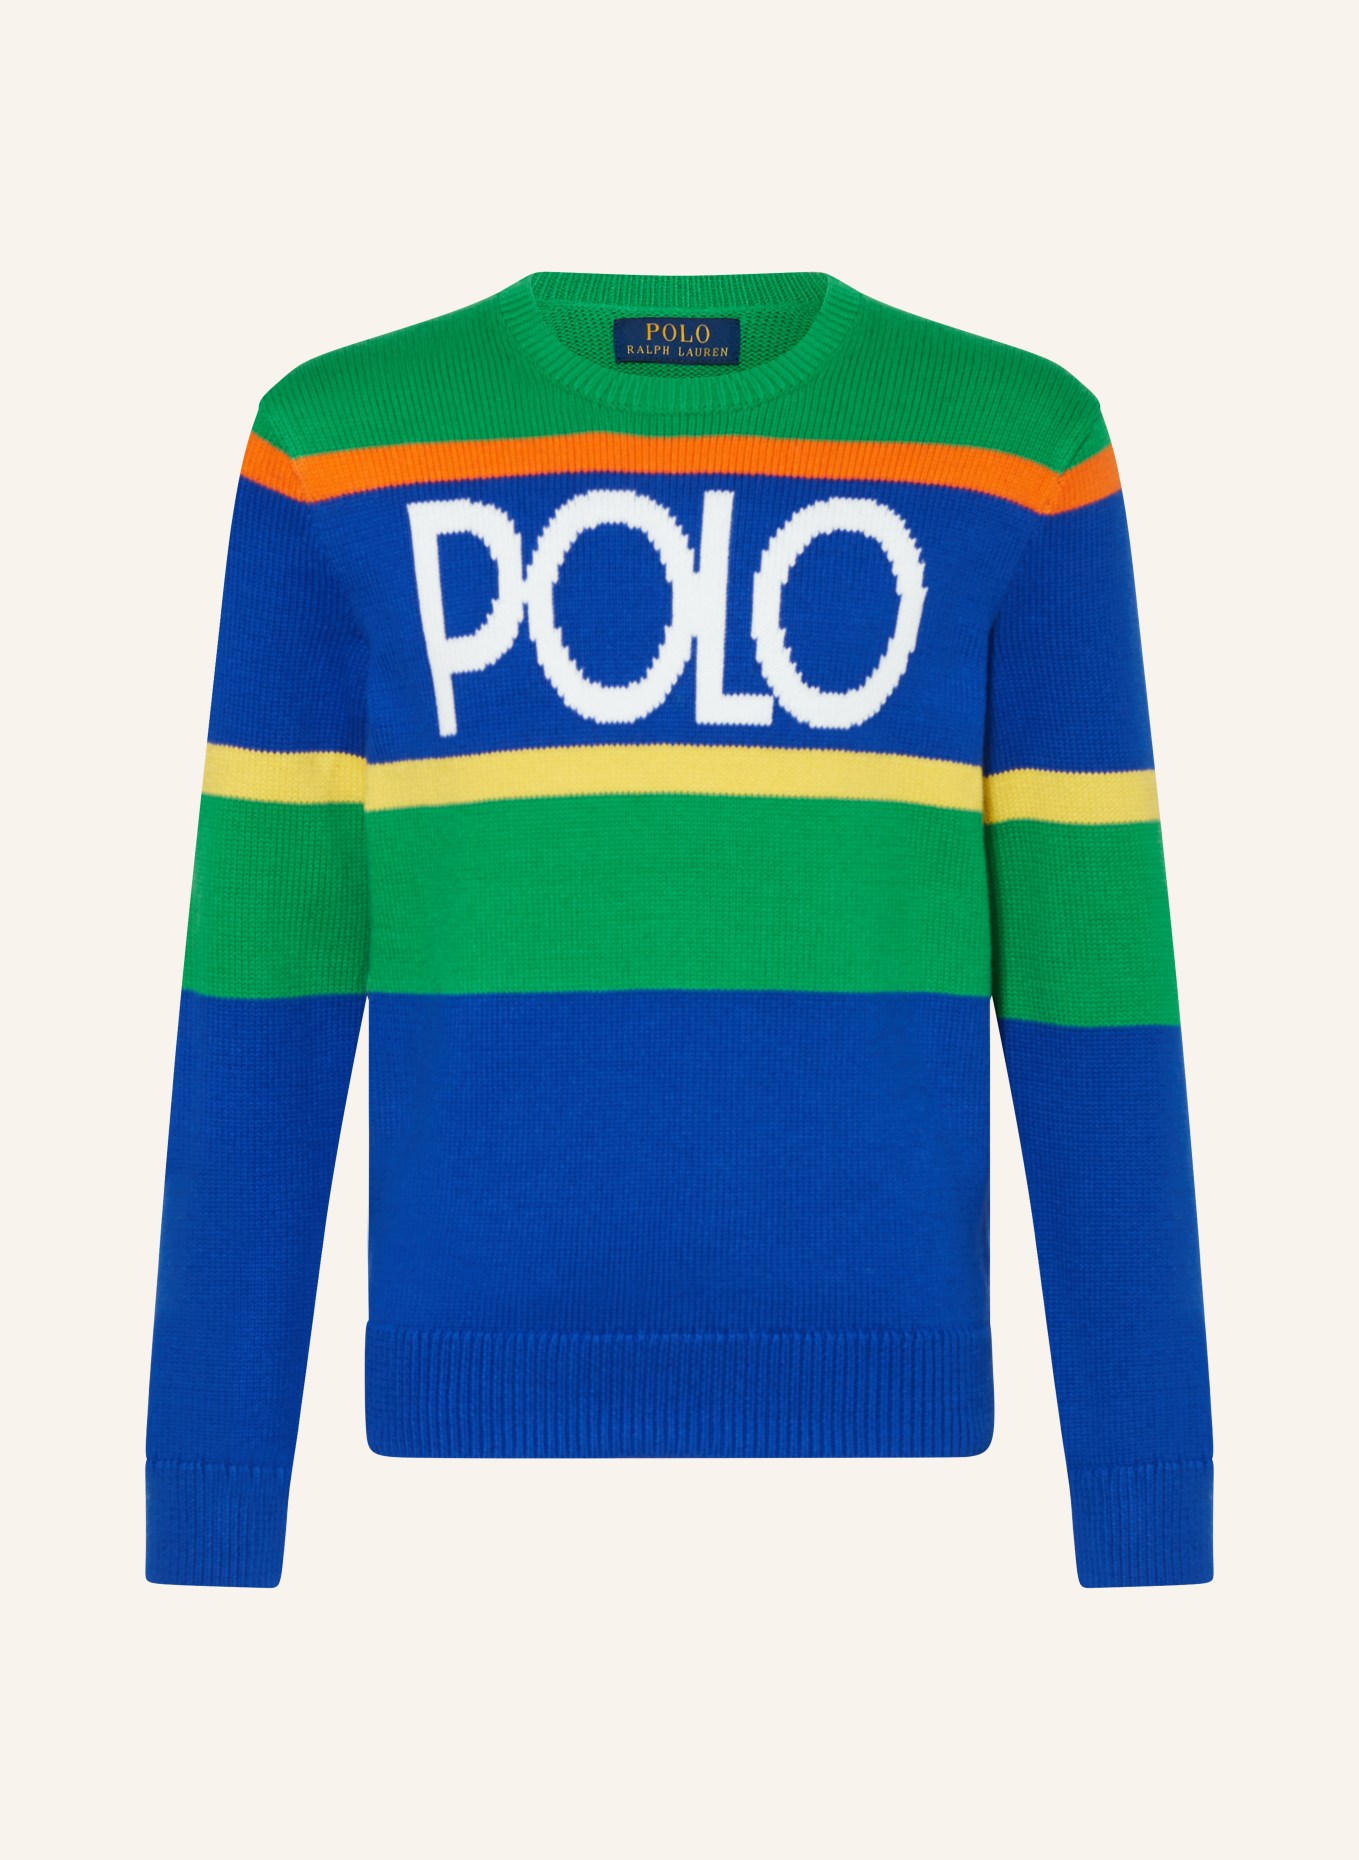 POLO RALPH LAUREN Pullover, Farbe: GRÜN/ BLAU/ GELB (Bild 1)